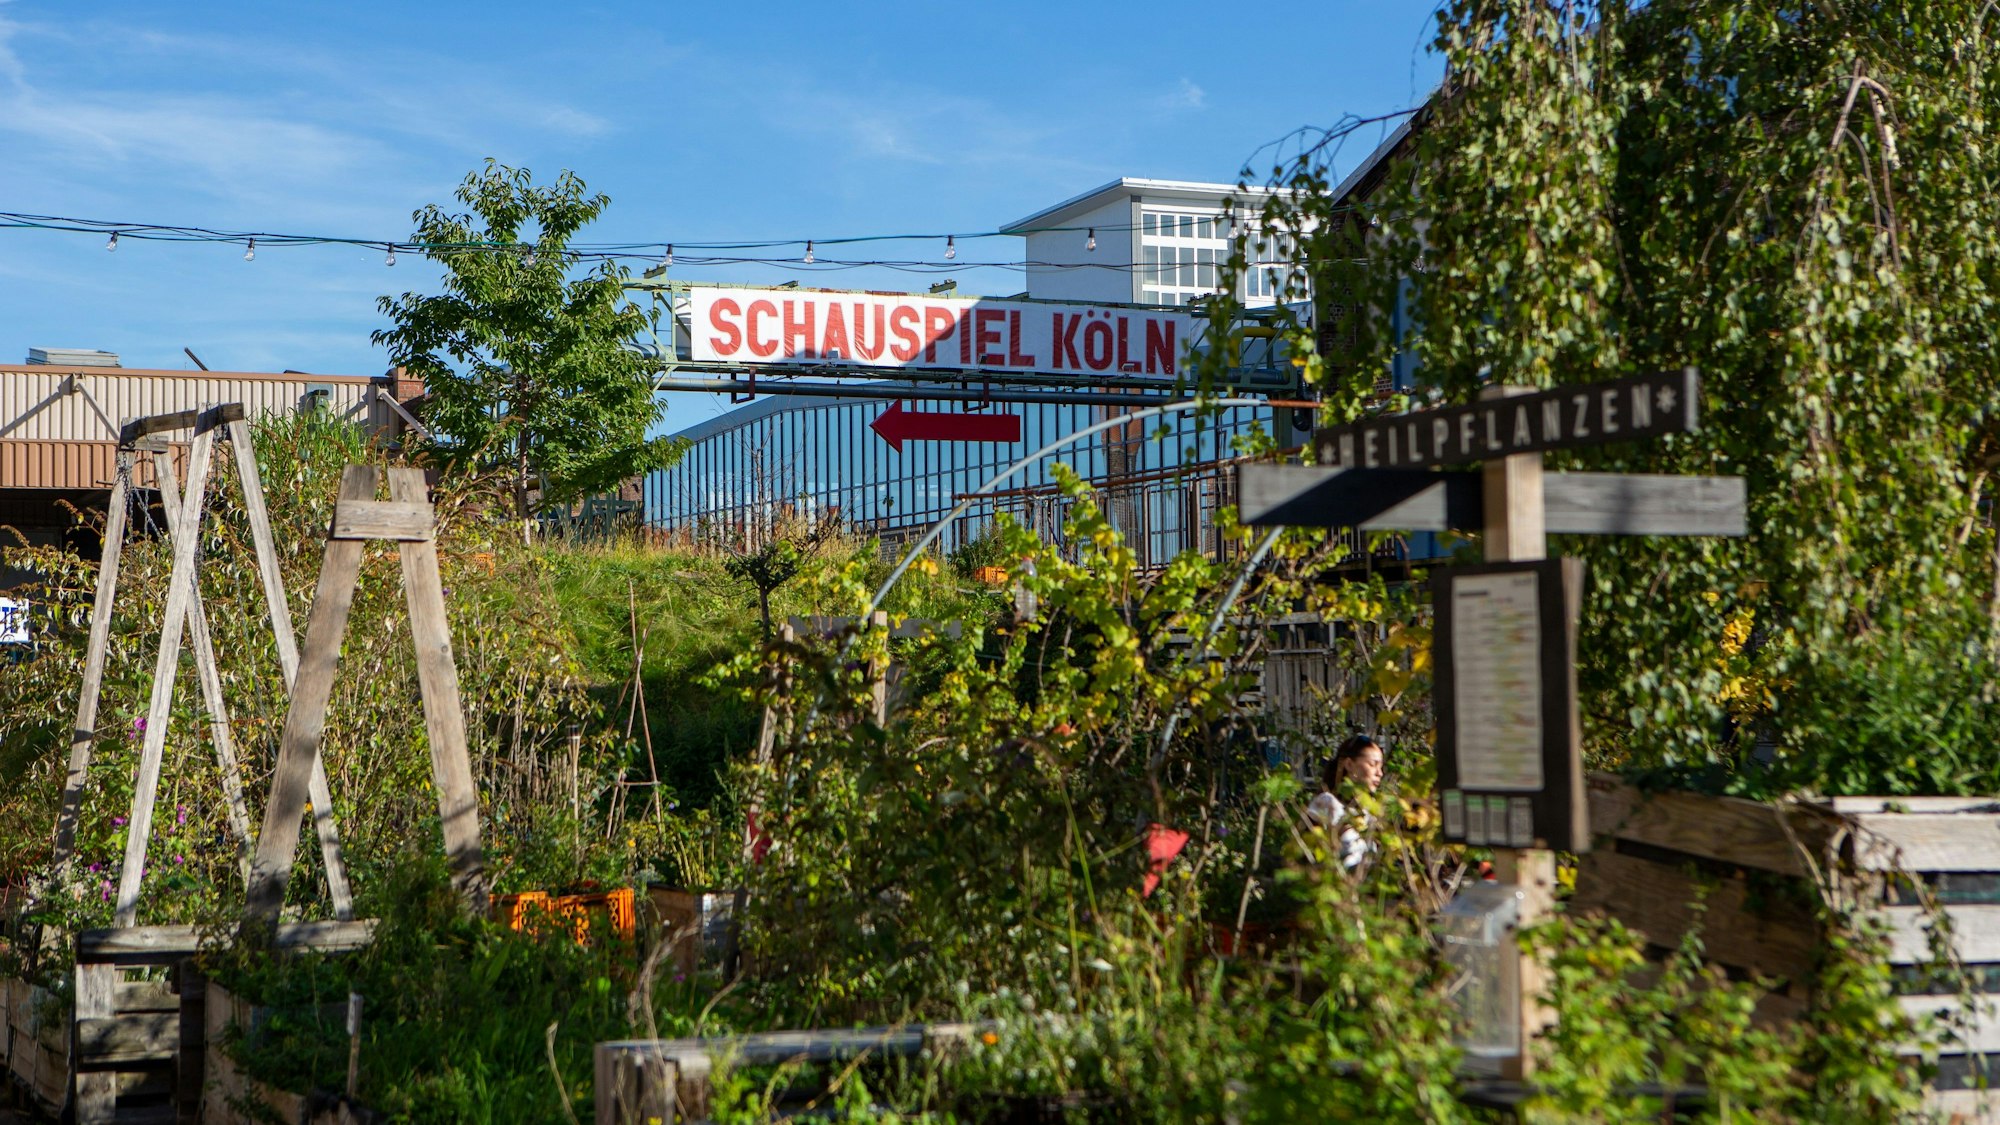 Ein wild gewachsener urbaner Garten, im Hintergrund weist ein Plakat zum Schauspiel Köln